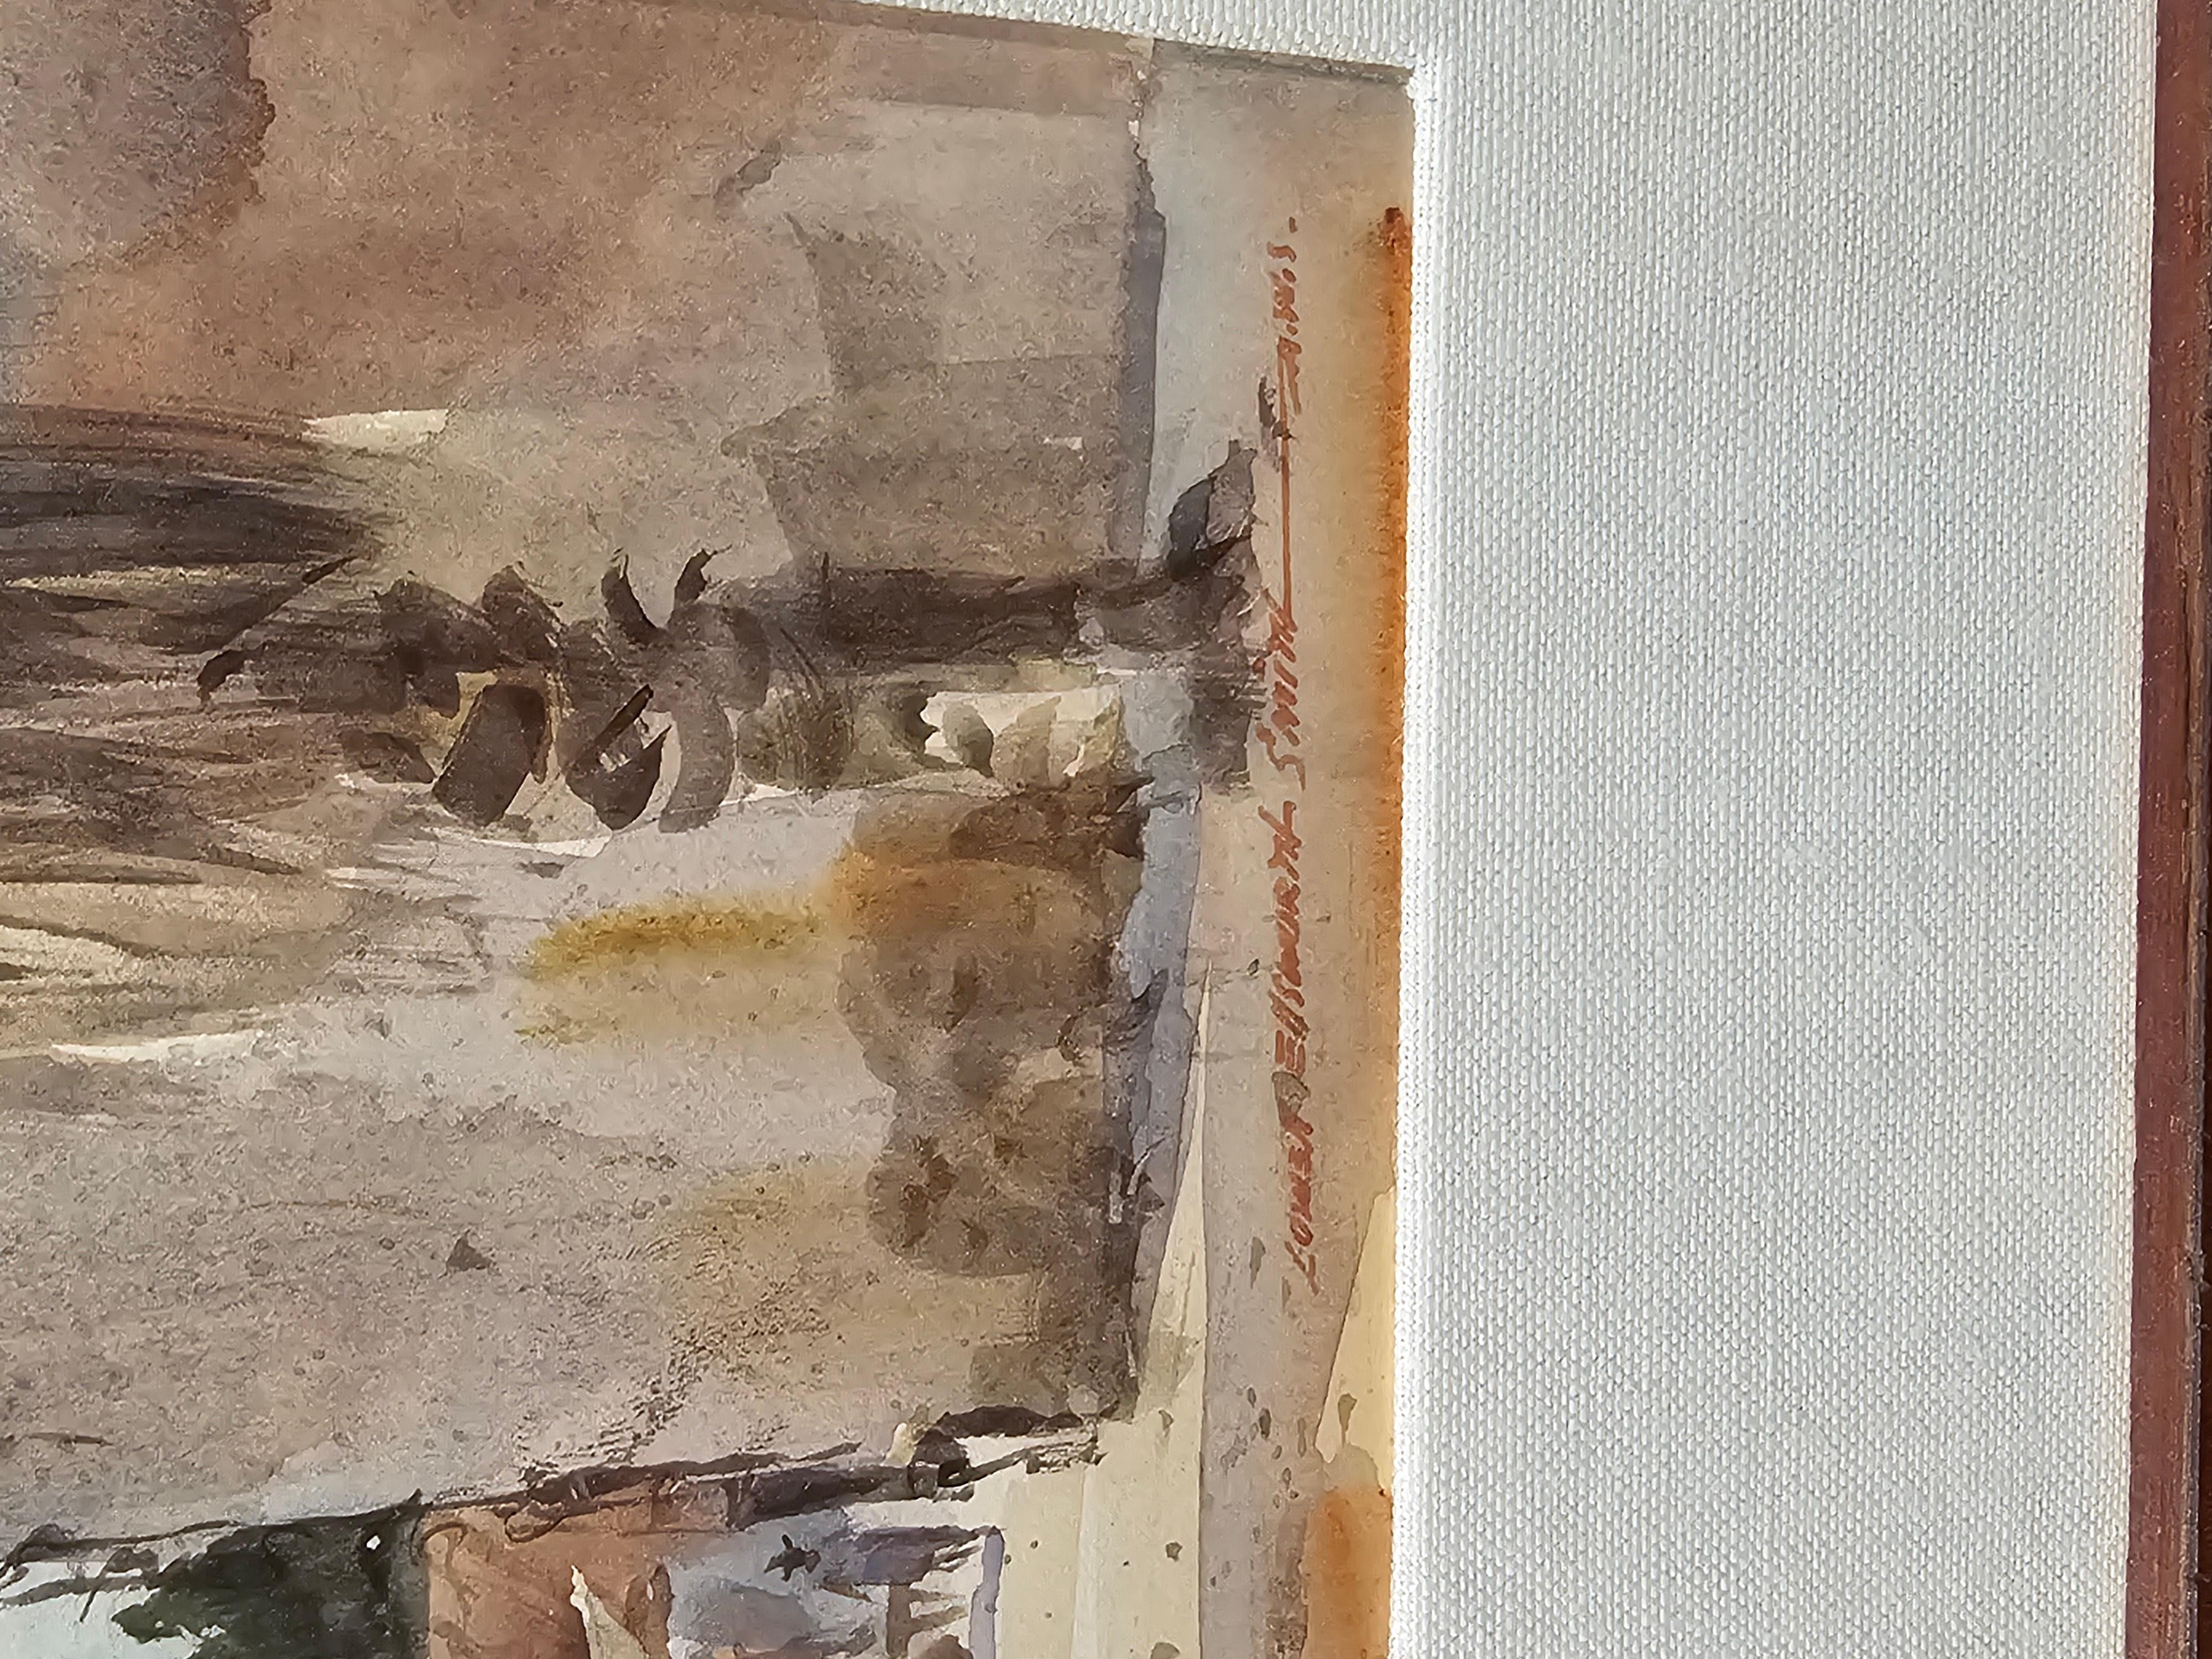 signiert unten rechts Lowell Ellsworth Smith, Mitglied der American Watercolor Society.  In einem neuen schönen Rahmen mit feinem Leinenpassepartout untergebracht.  In ausgezeichnetem Zustand.  Bildgröße 10 1/2 x 7 Zoll.  Das Bild zeigt einen Markt